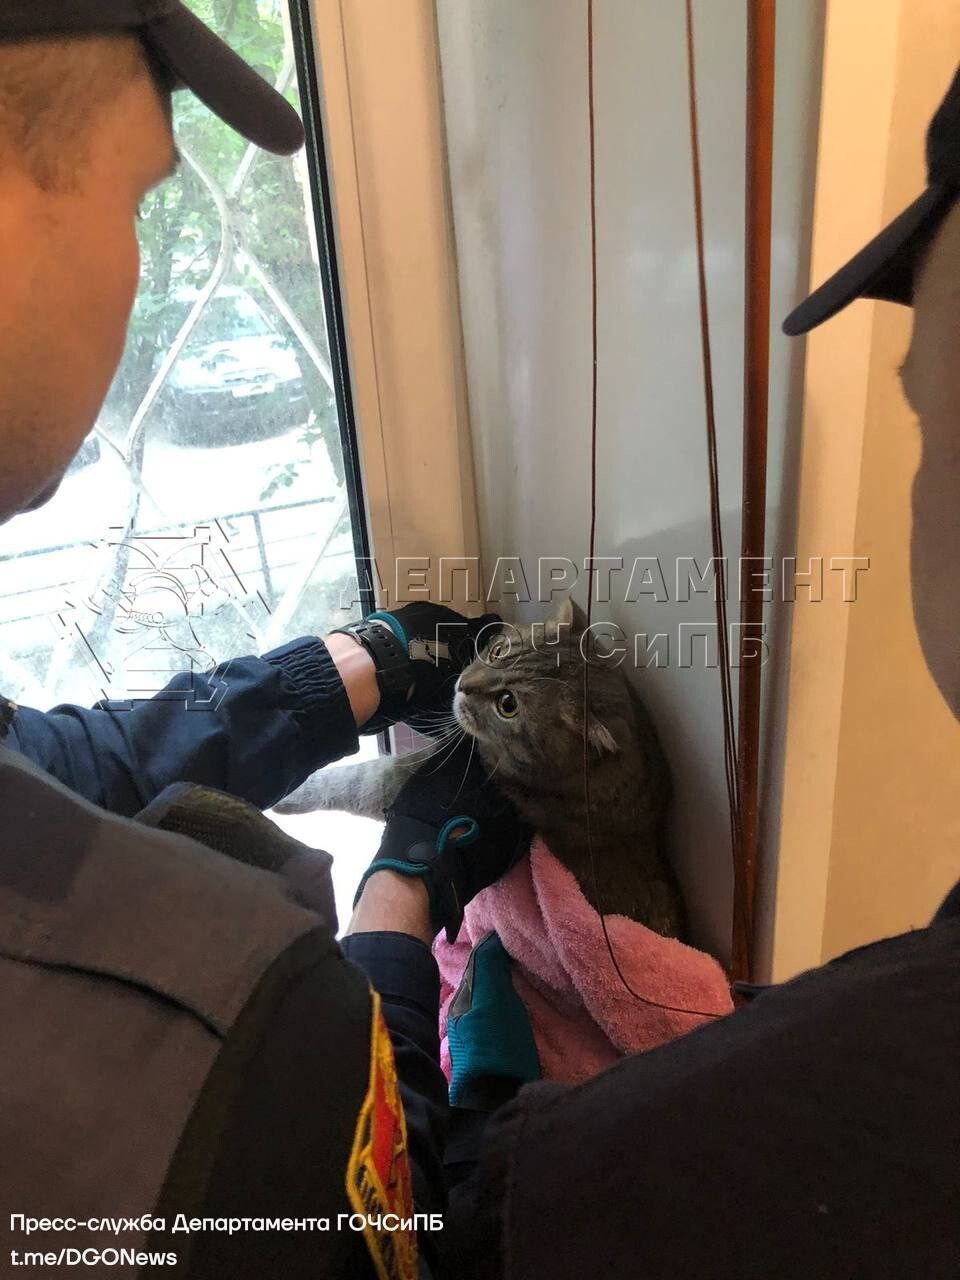 Московские спасатели помогли застрявшей кошке